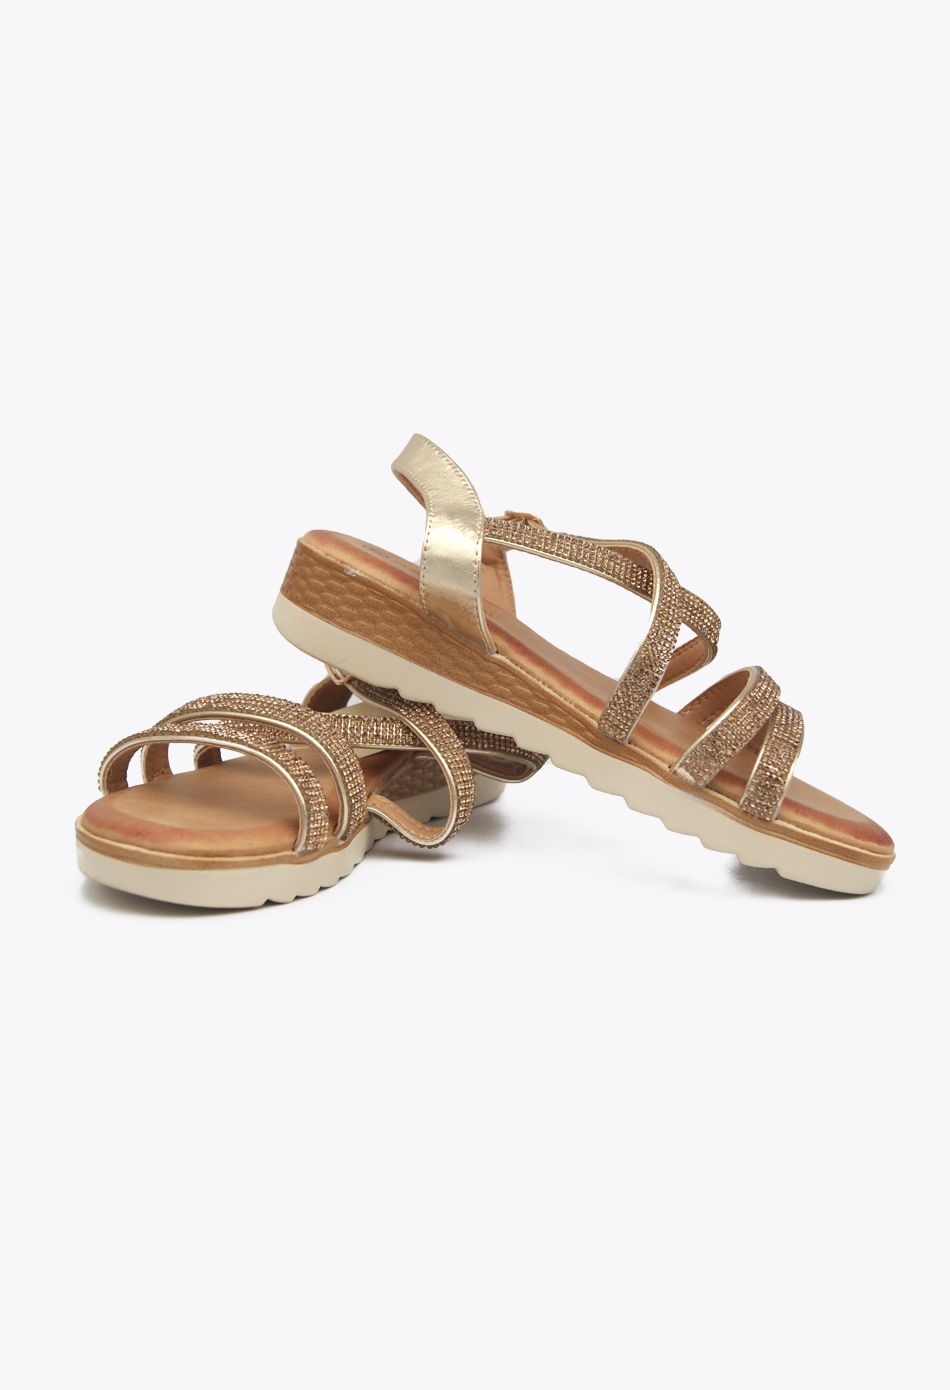 Γυναικεία Σανδάλια Flatforms (Δίπατα) Με Strass Χρυσό / TZ686-gold Ανοιχτά Παπούτσια joya.gr